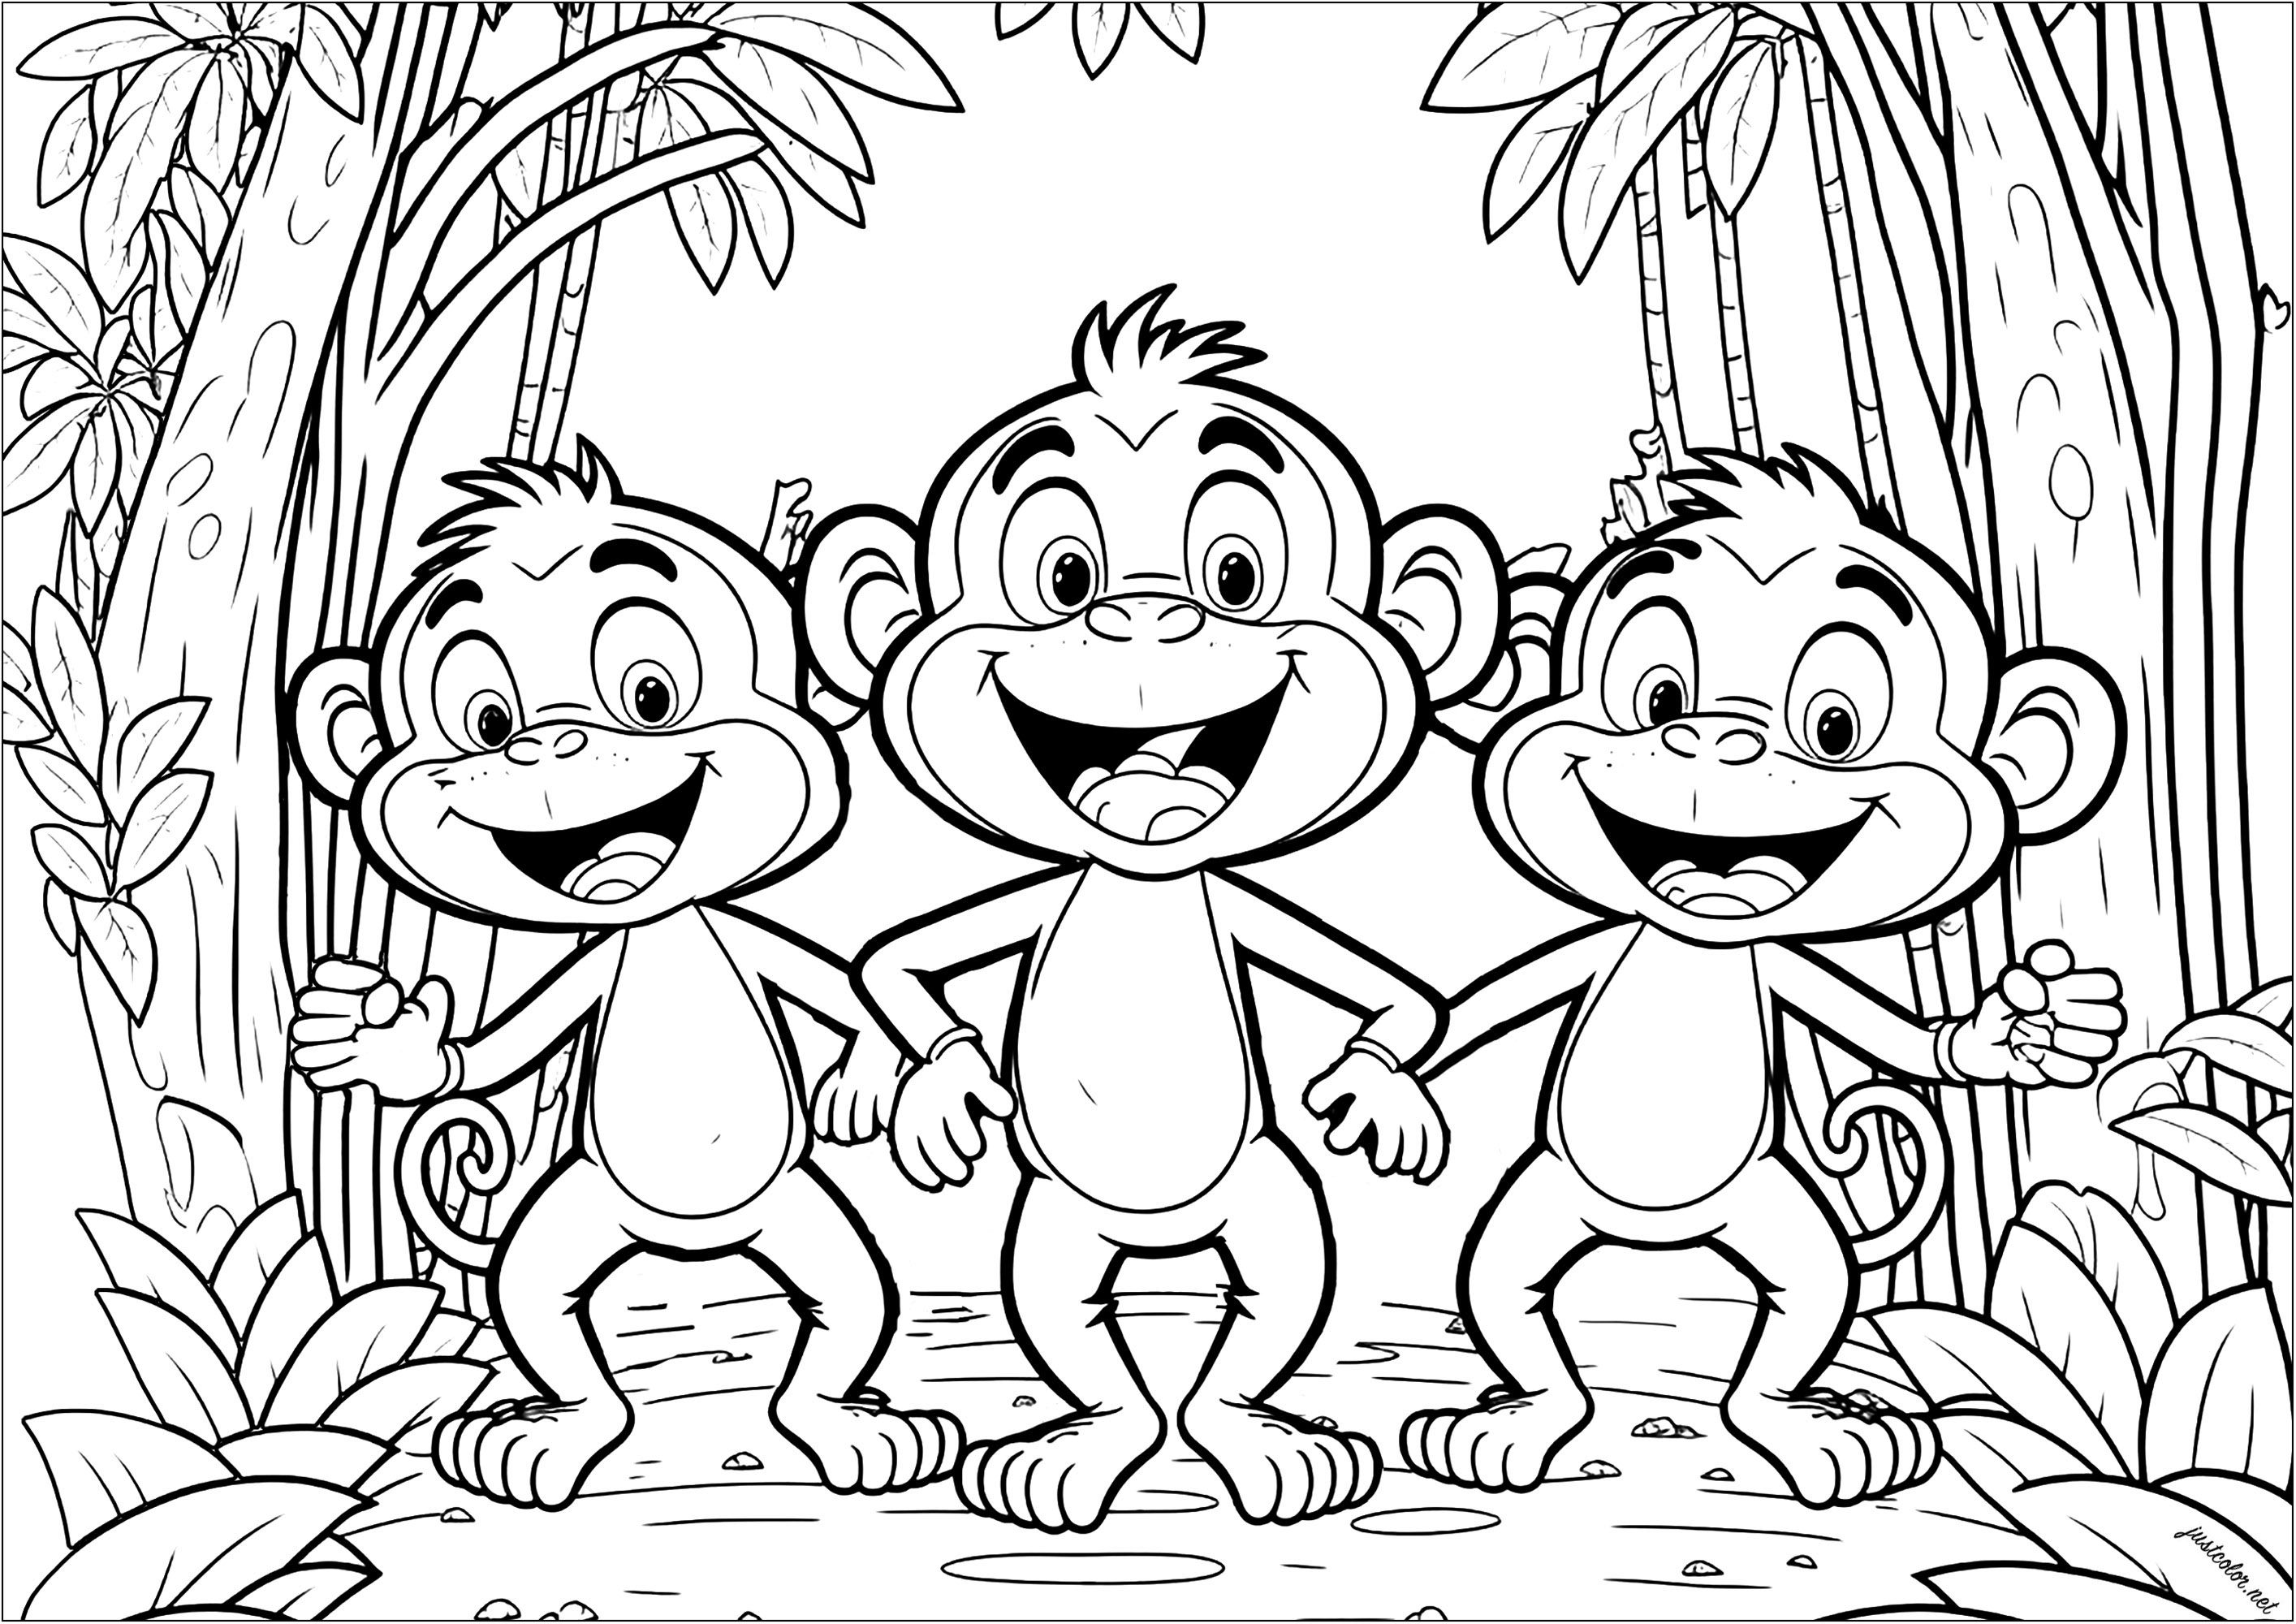 Drei lustige Affen zum Ausmalen. Diese Primaten sehen sehr kindlich aus, aber die Vegetation im Hintergrund macht die Farbgebung recht komplex.